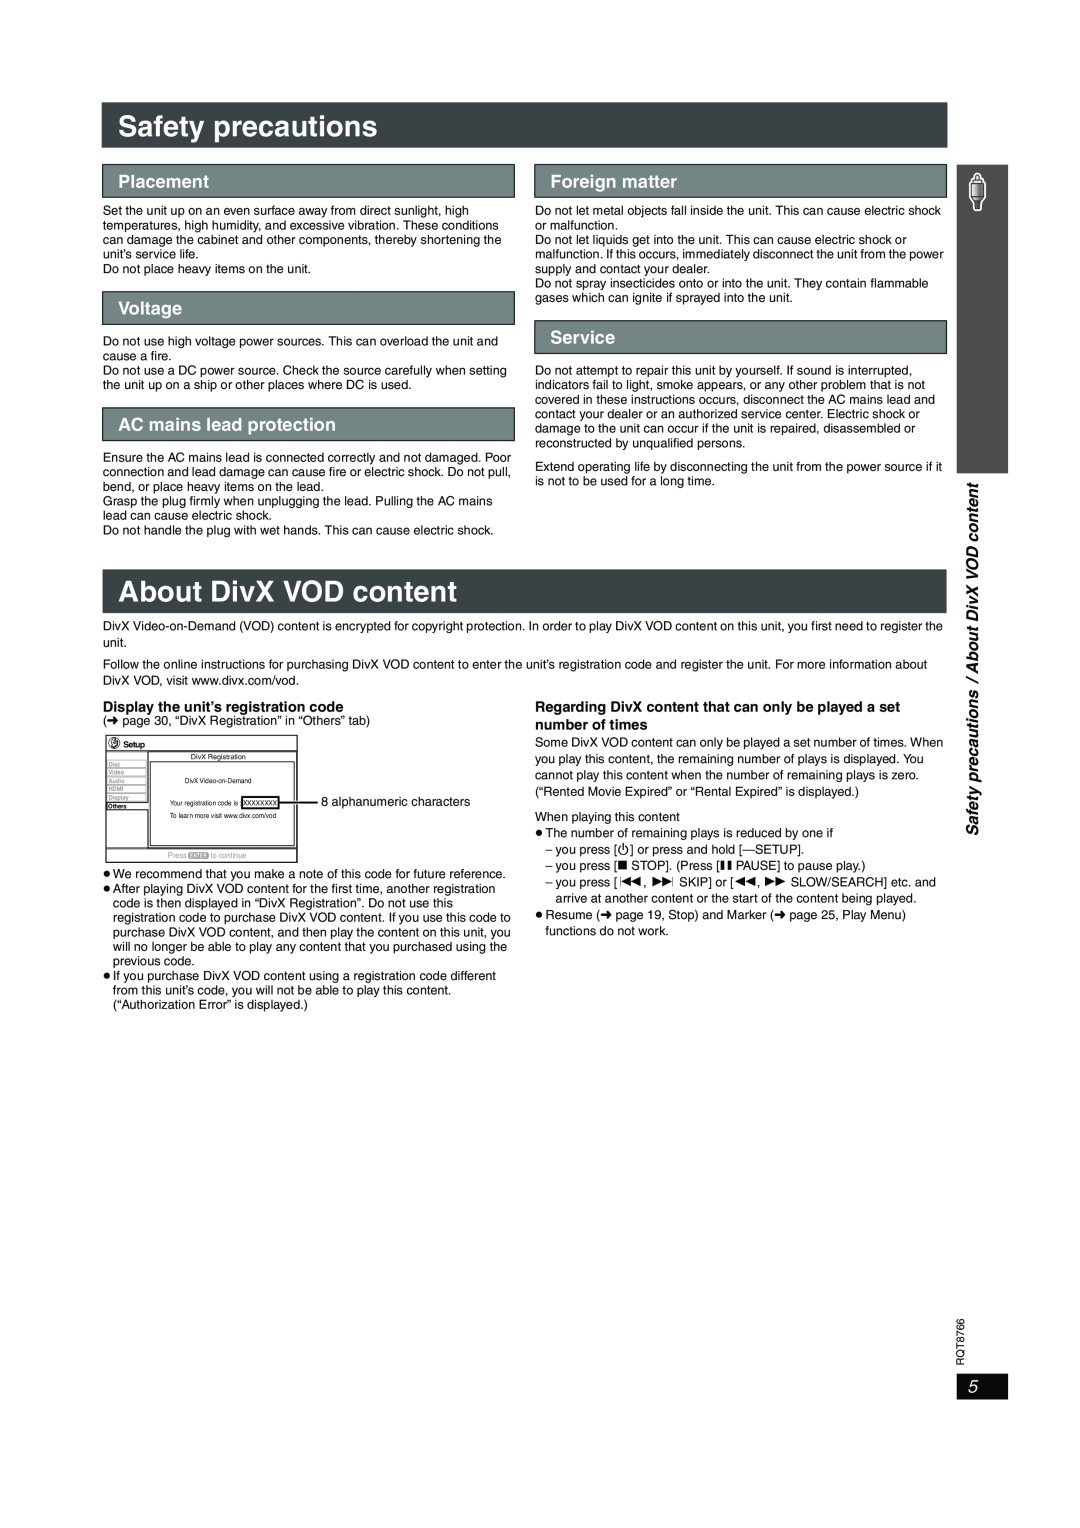 Panasonic SC-HT995 Safety precautions, About DivX VOD content, Placement, Voltage, AC mains lead protection, Service 